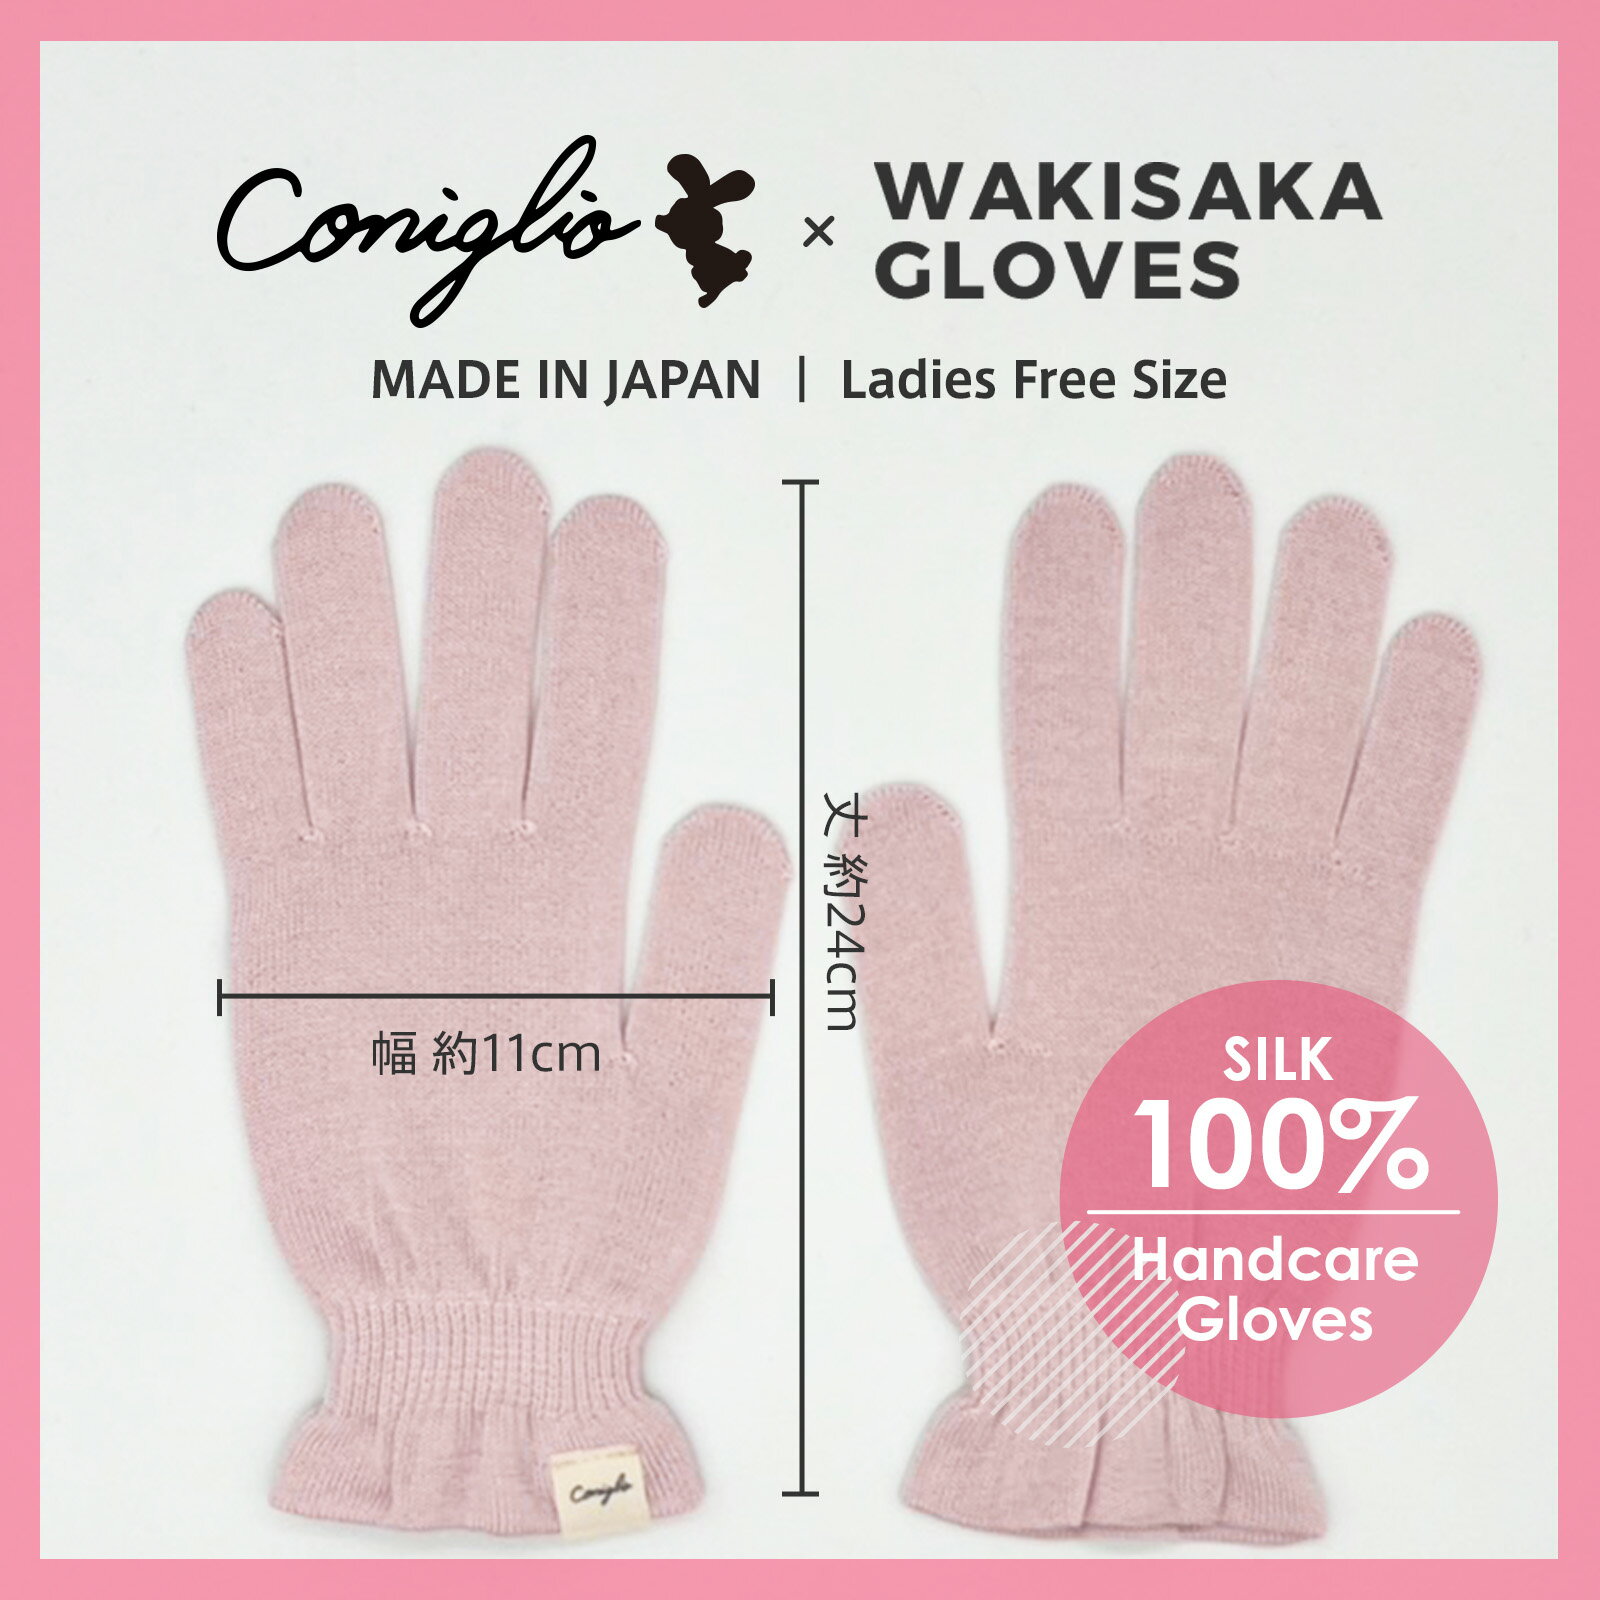 ハンドケア おやすみ ナイトケア シルク 100% 手袋 Conigilio × WAKISAKA GLOVES 「指先まで美しく」日本製 保温 乾燥 UVカット 冷え性 手荒れ あかぎれ ひびわれ 対策 ハンドクリームと合わせえて使える手袋